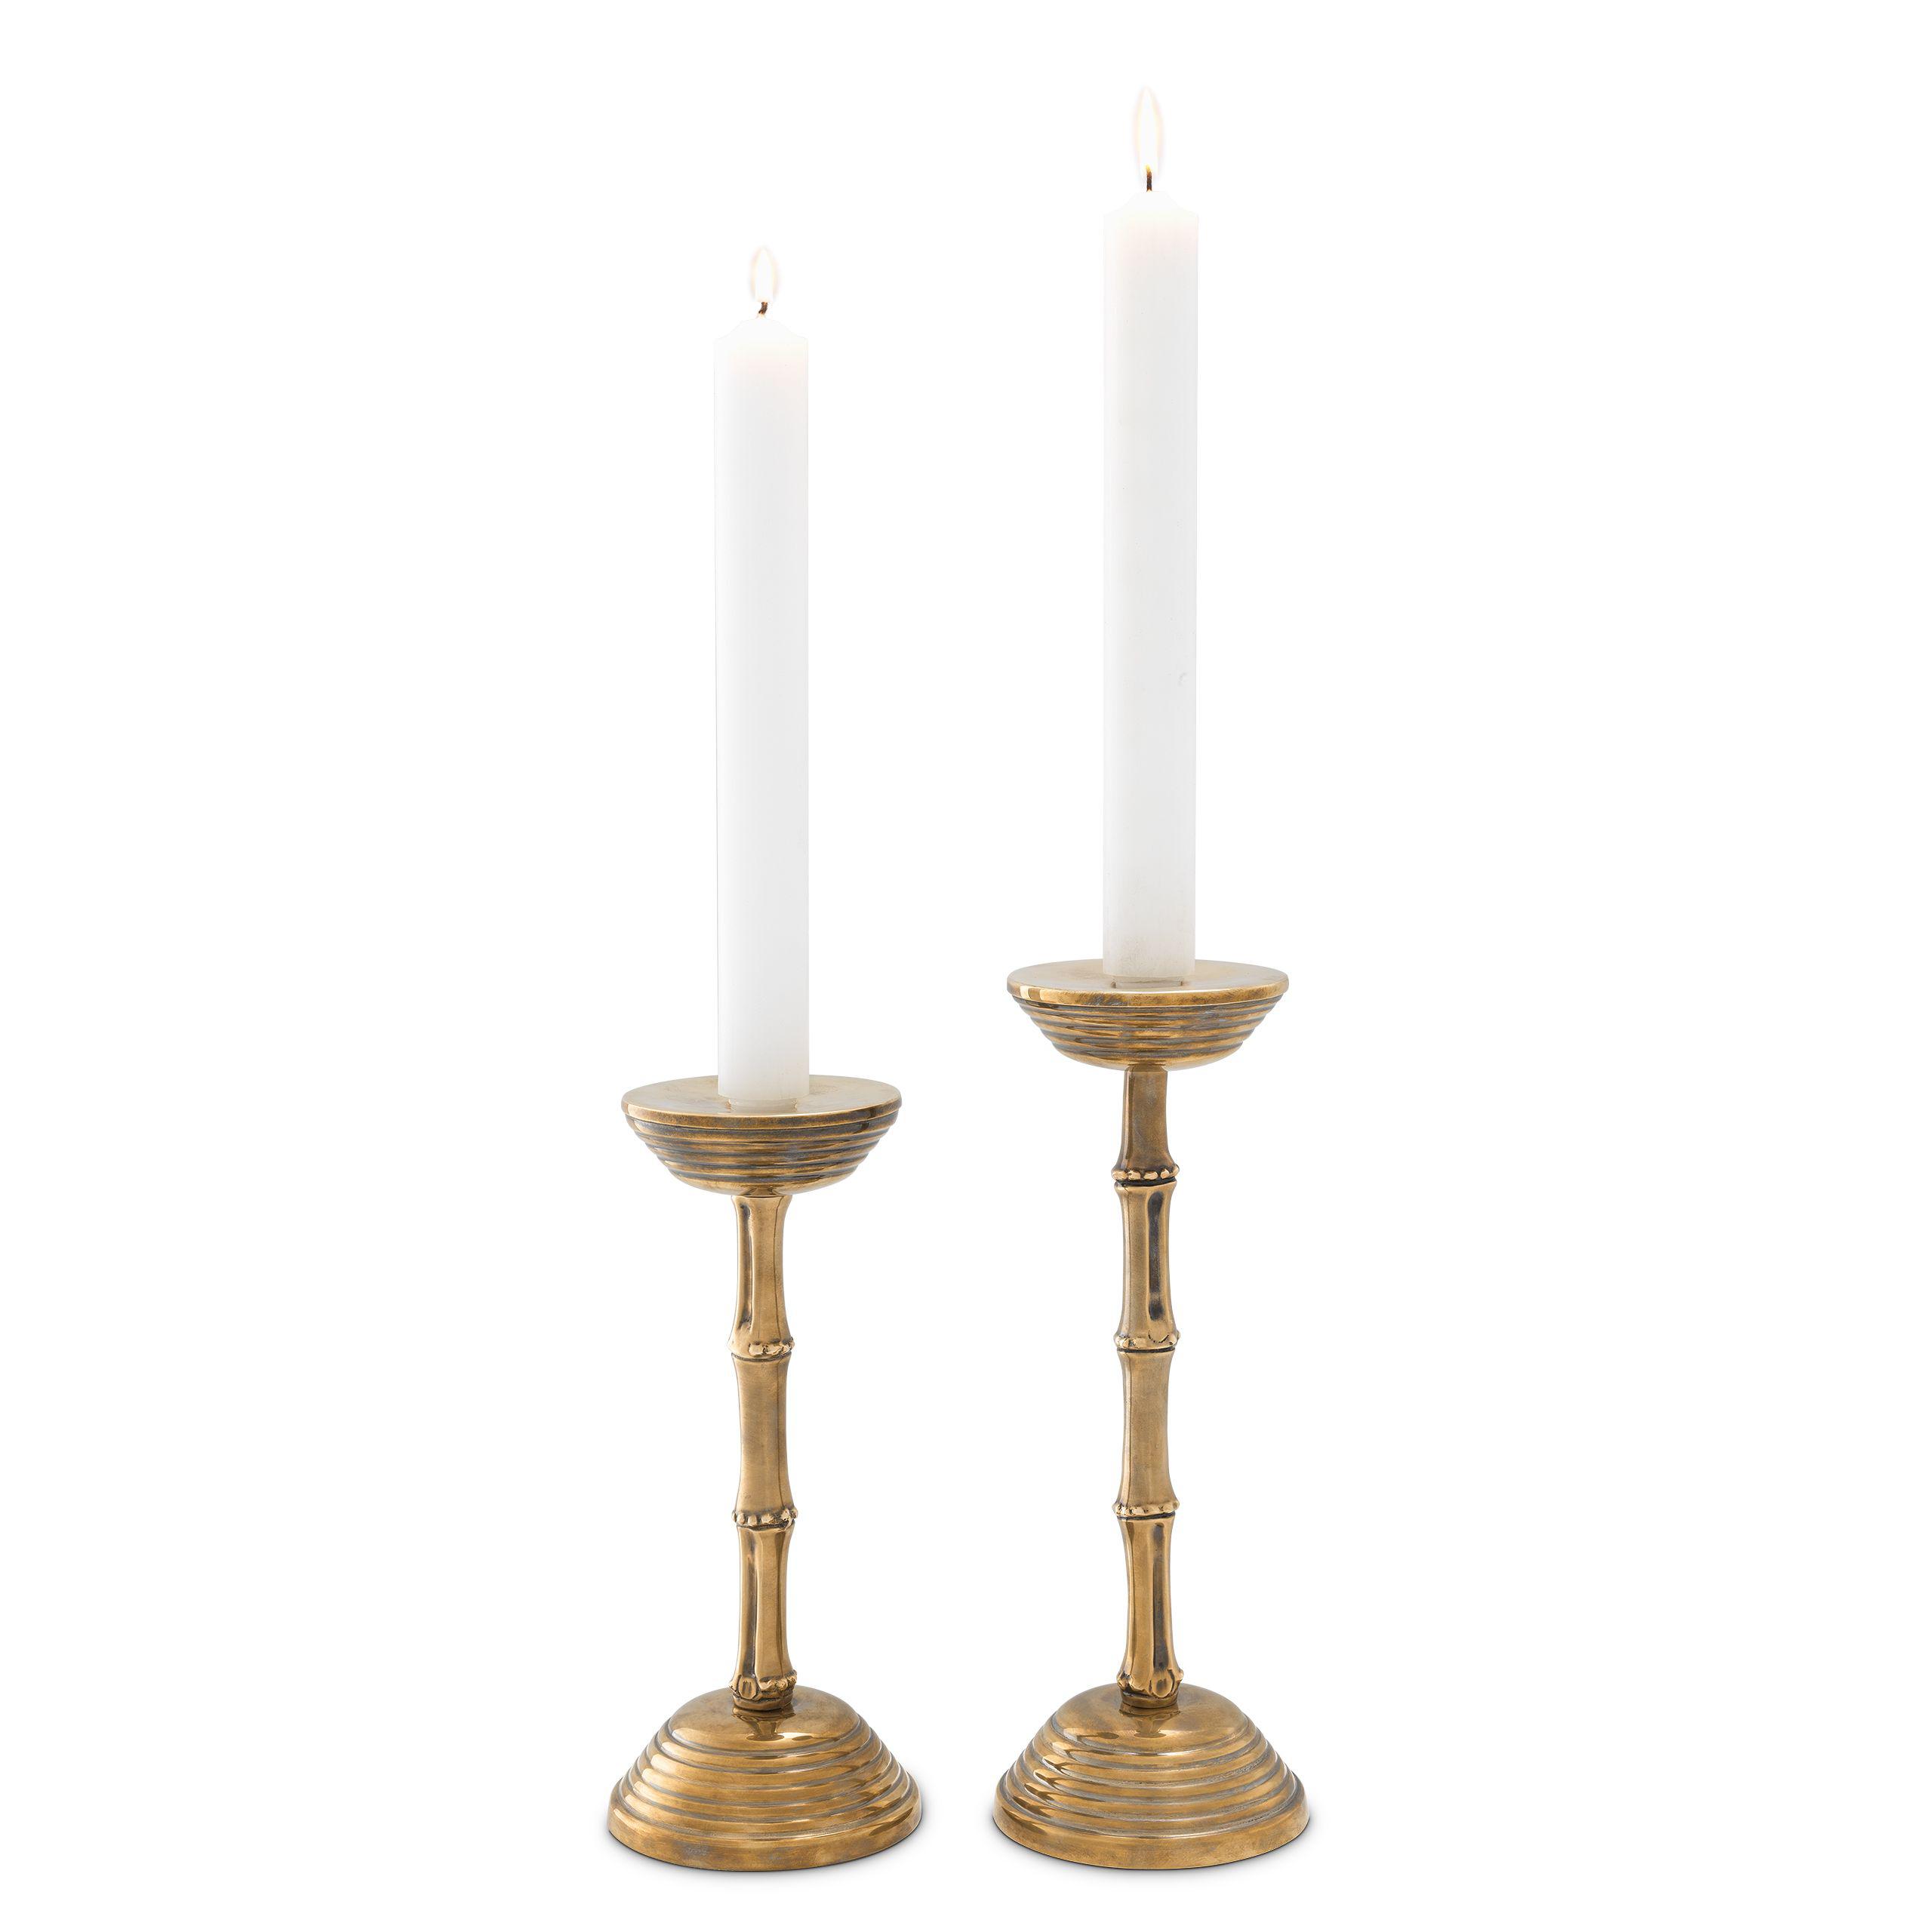 Купить Подсвечник Candle Holder Gallions set of 2 в интернет-магазине roooms.ru